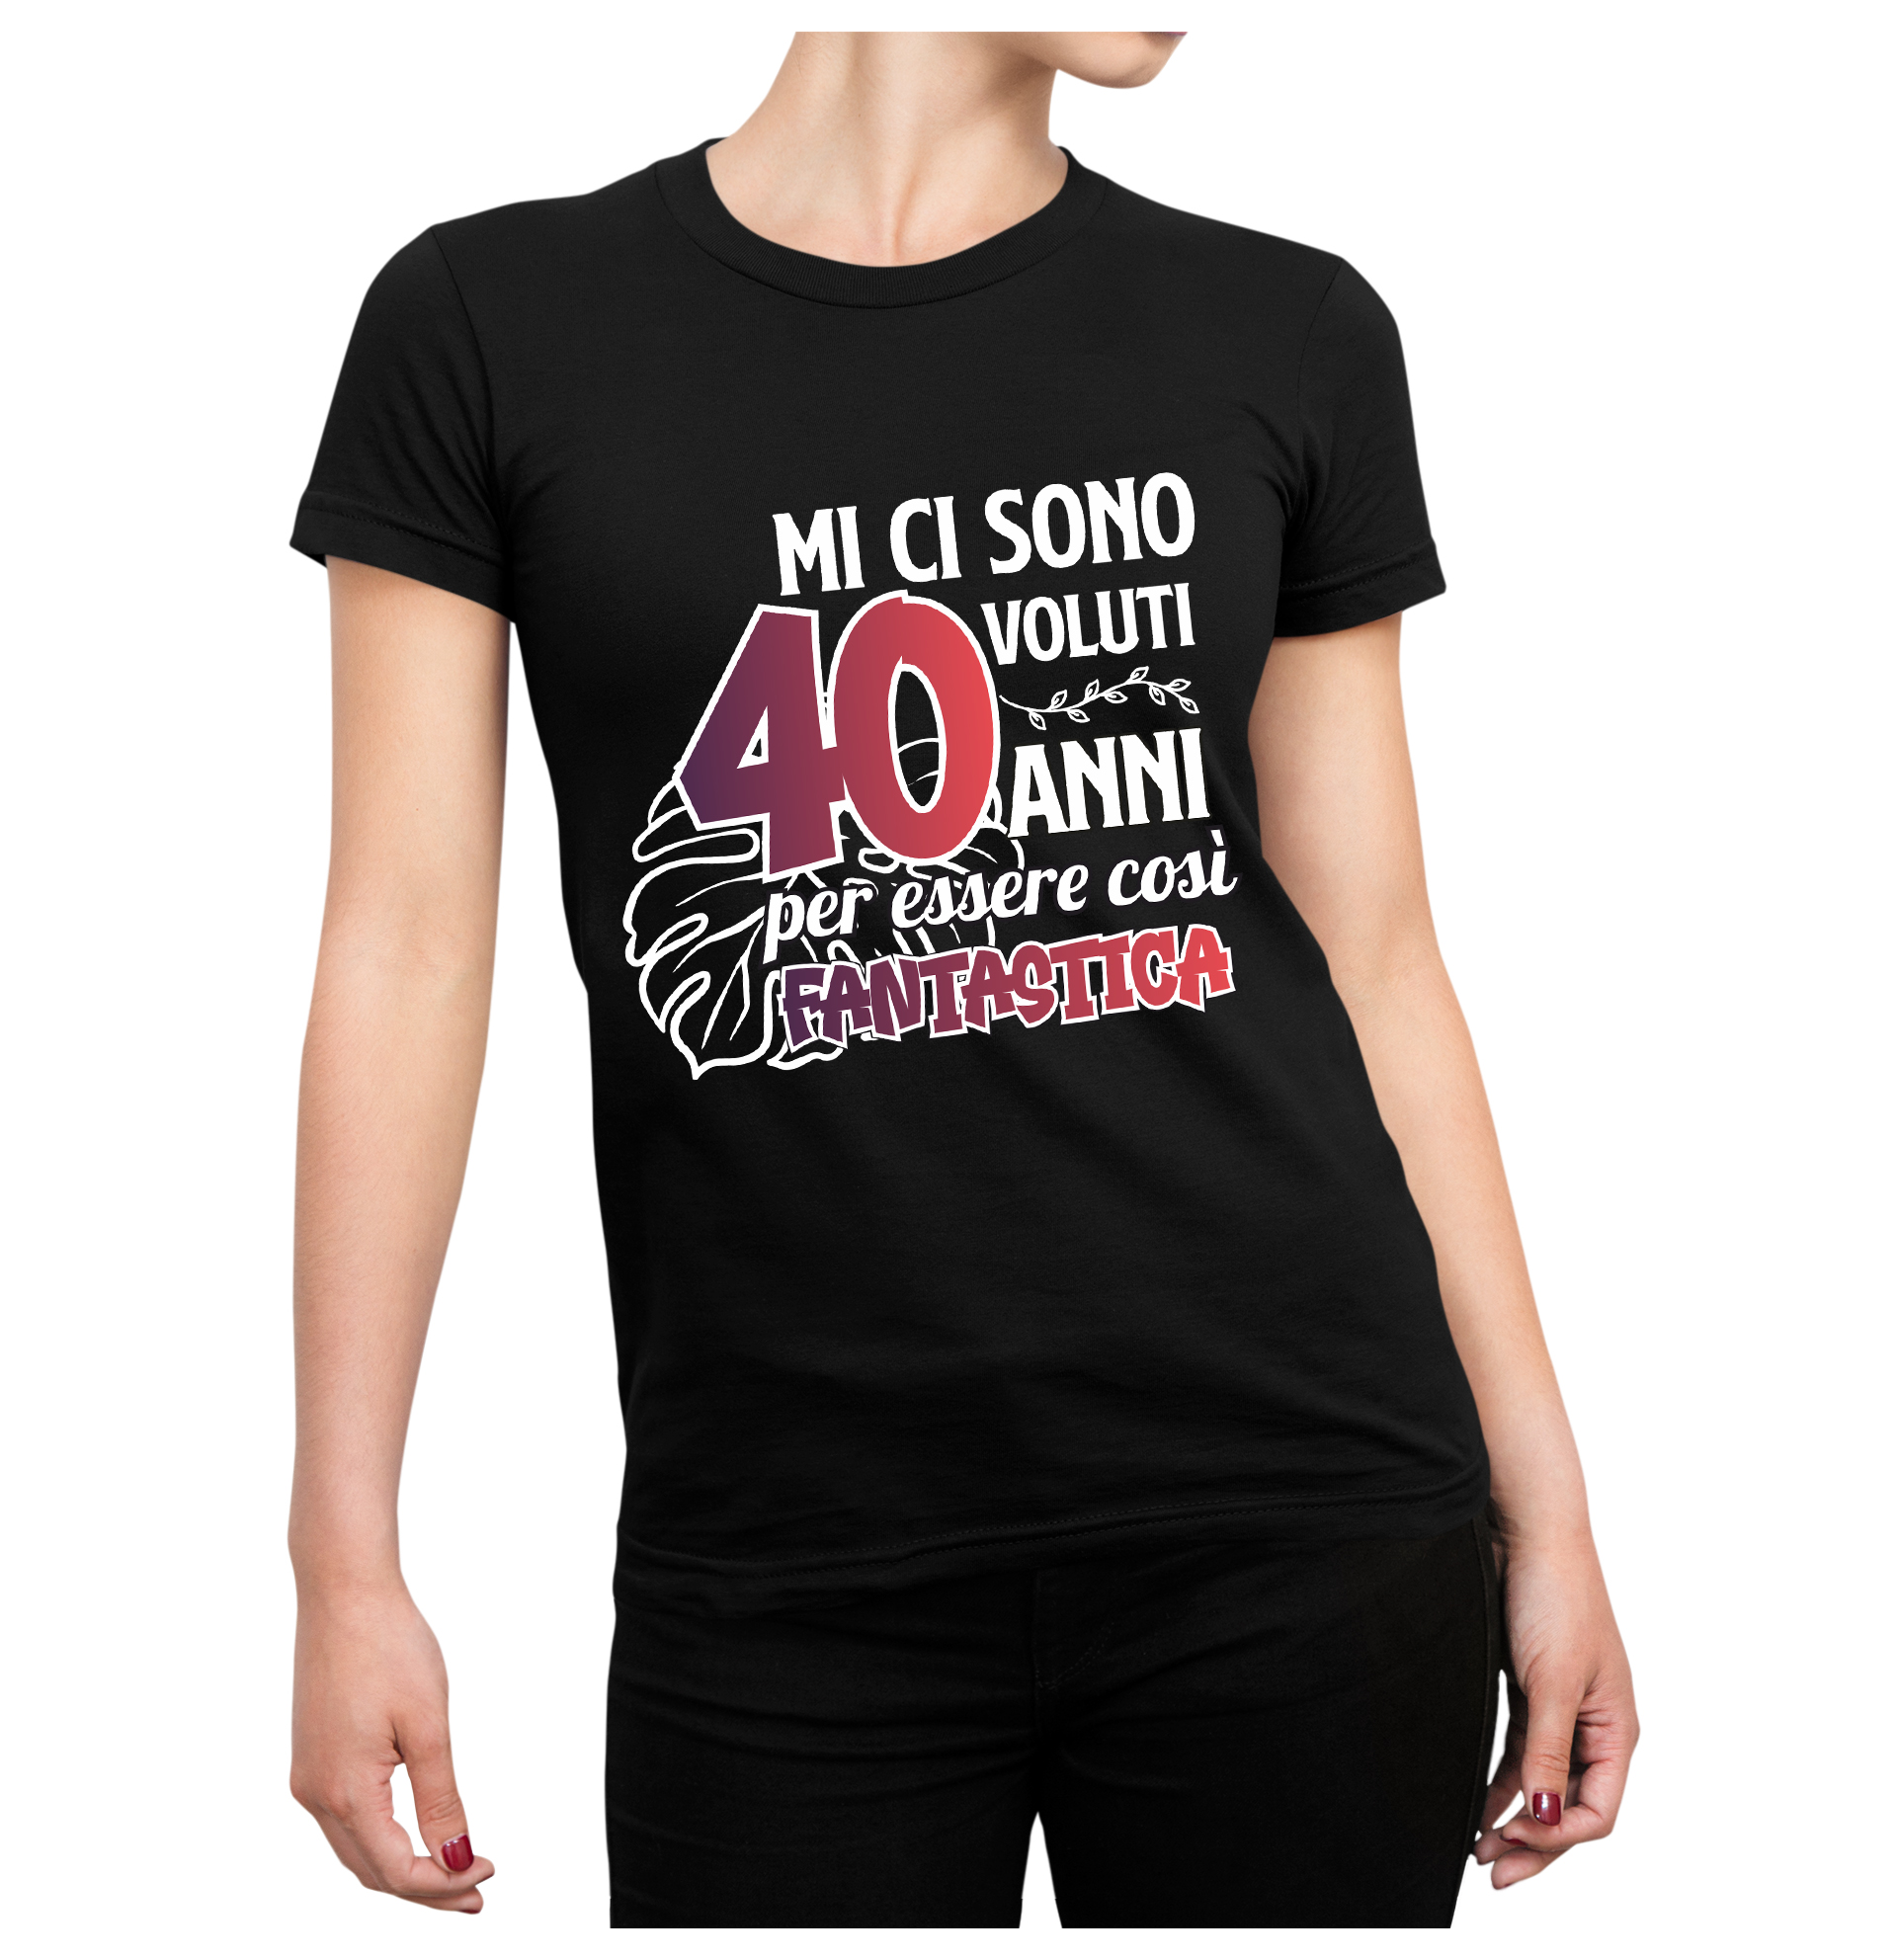 Tshirt Compleanno 40 Anni Donna Estate Mi ci sono Voluti 40 Anni